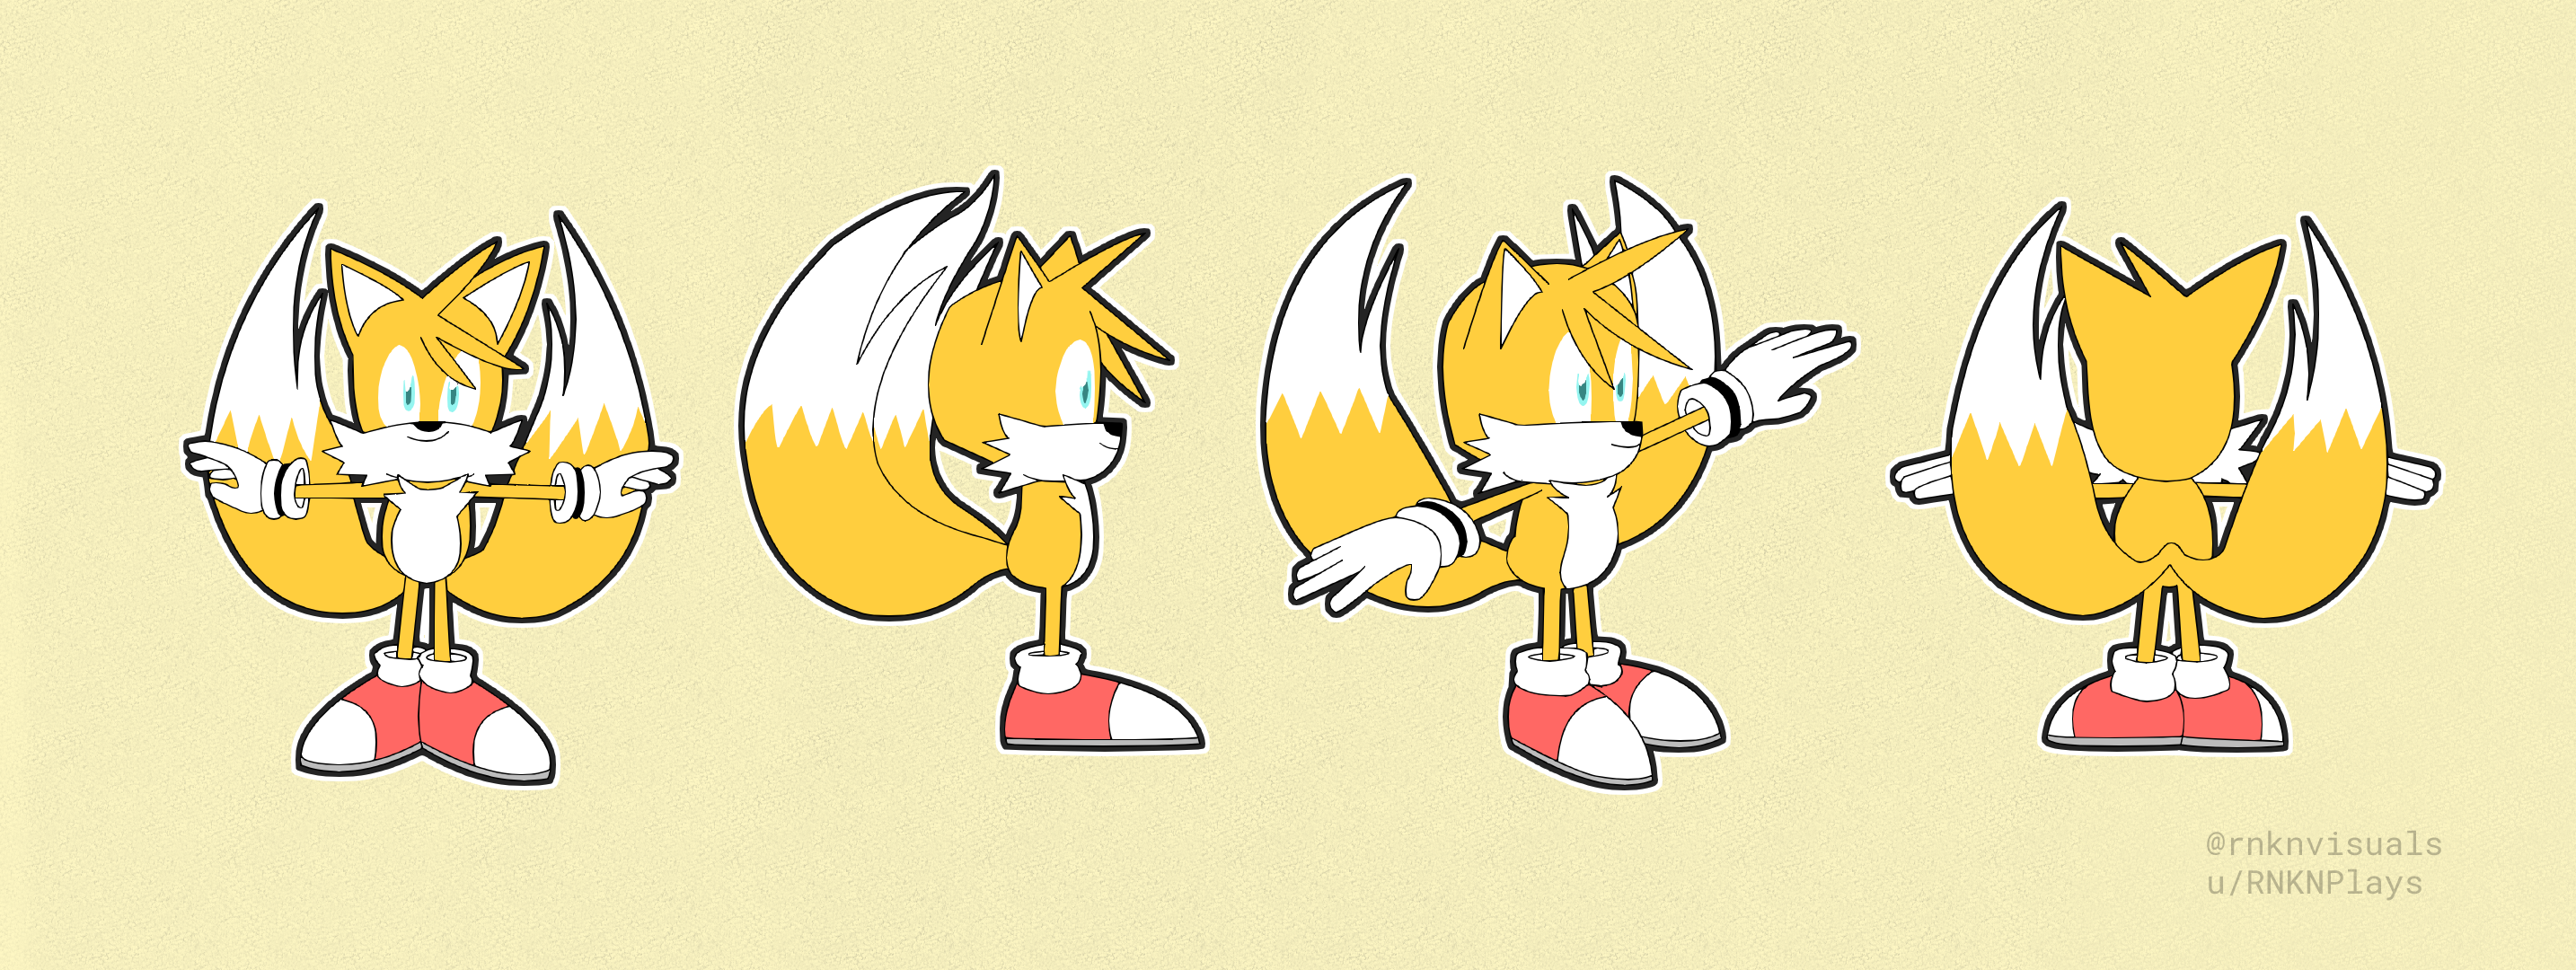 Super Tails!!! (Artist: Nerkin) : r/milesprower